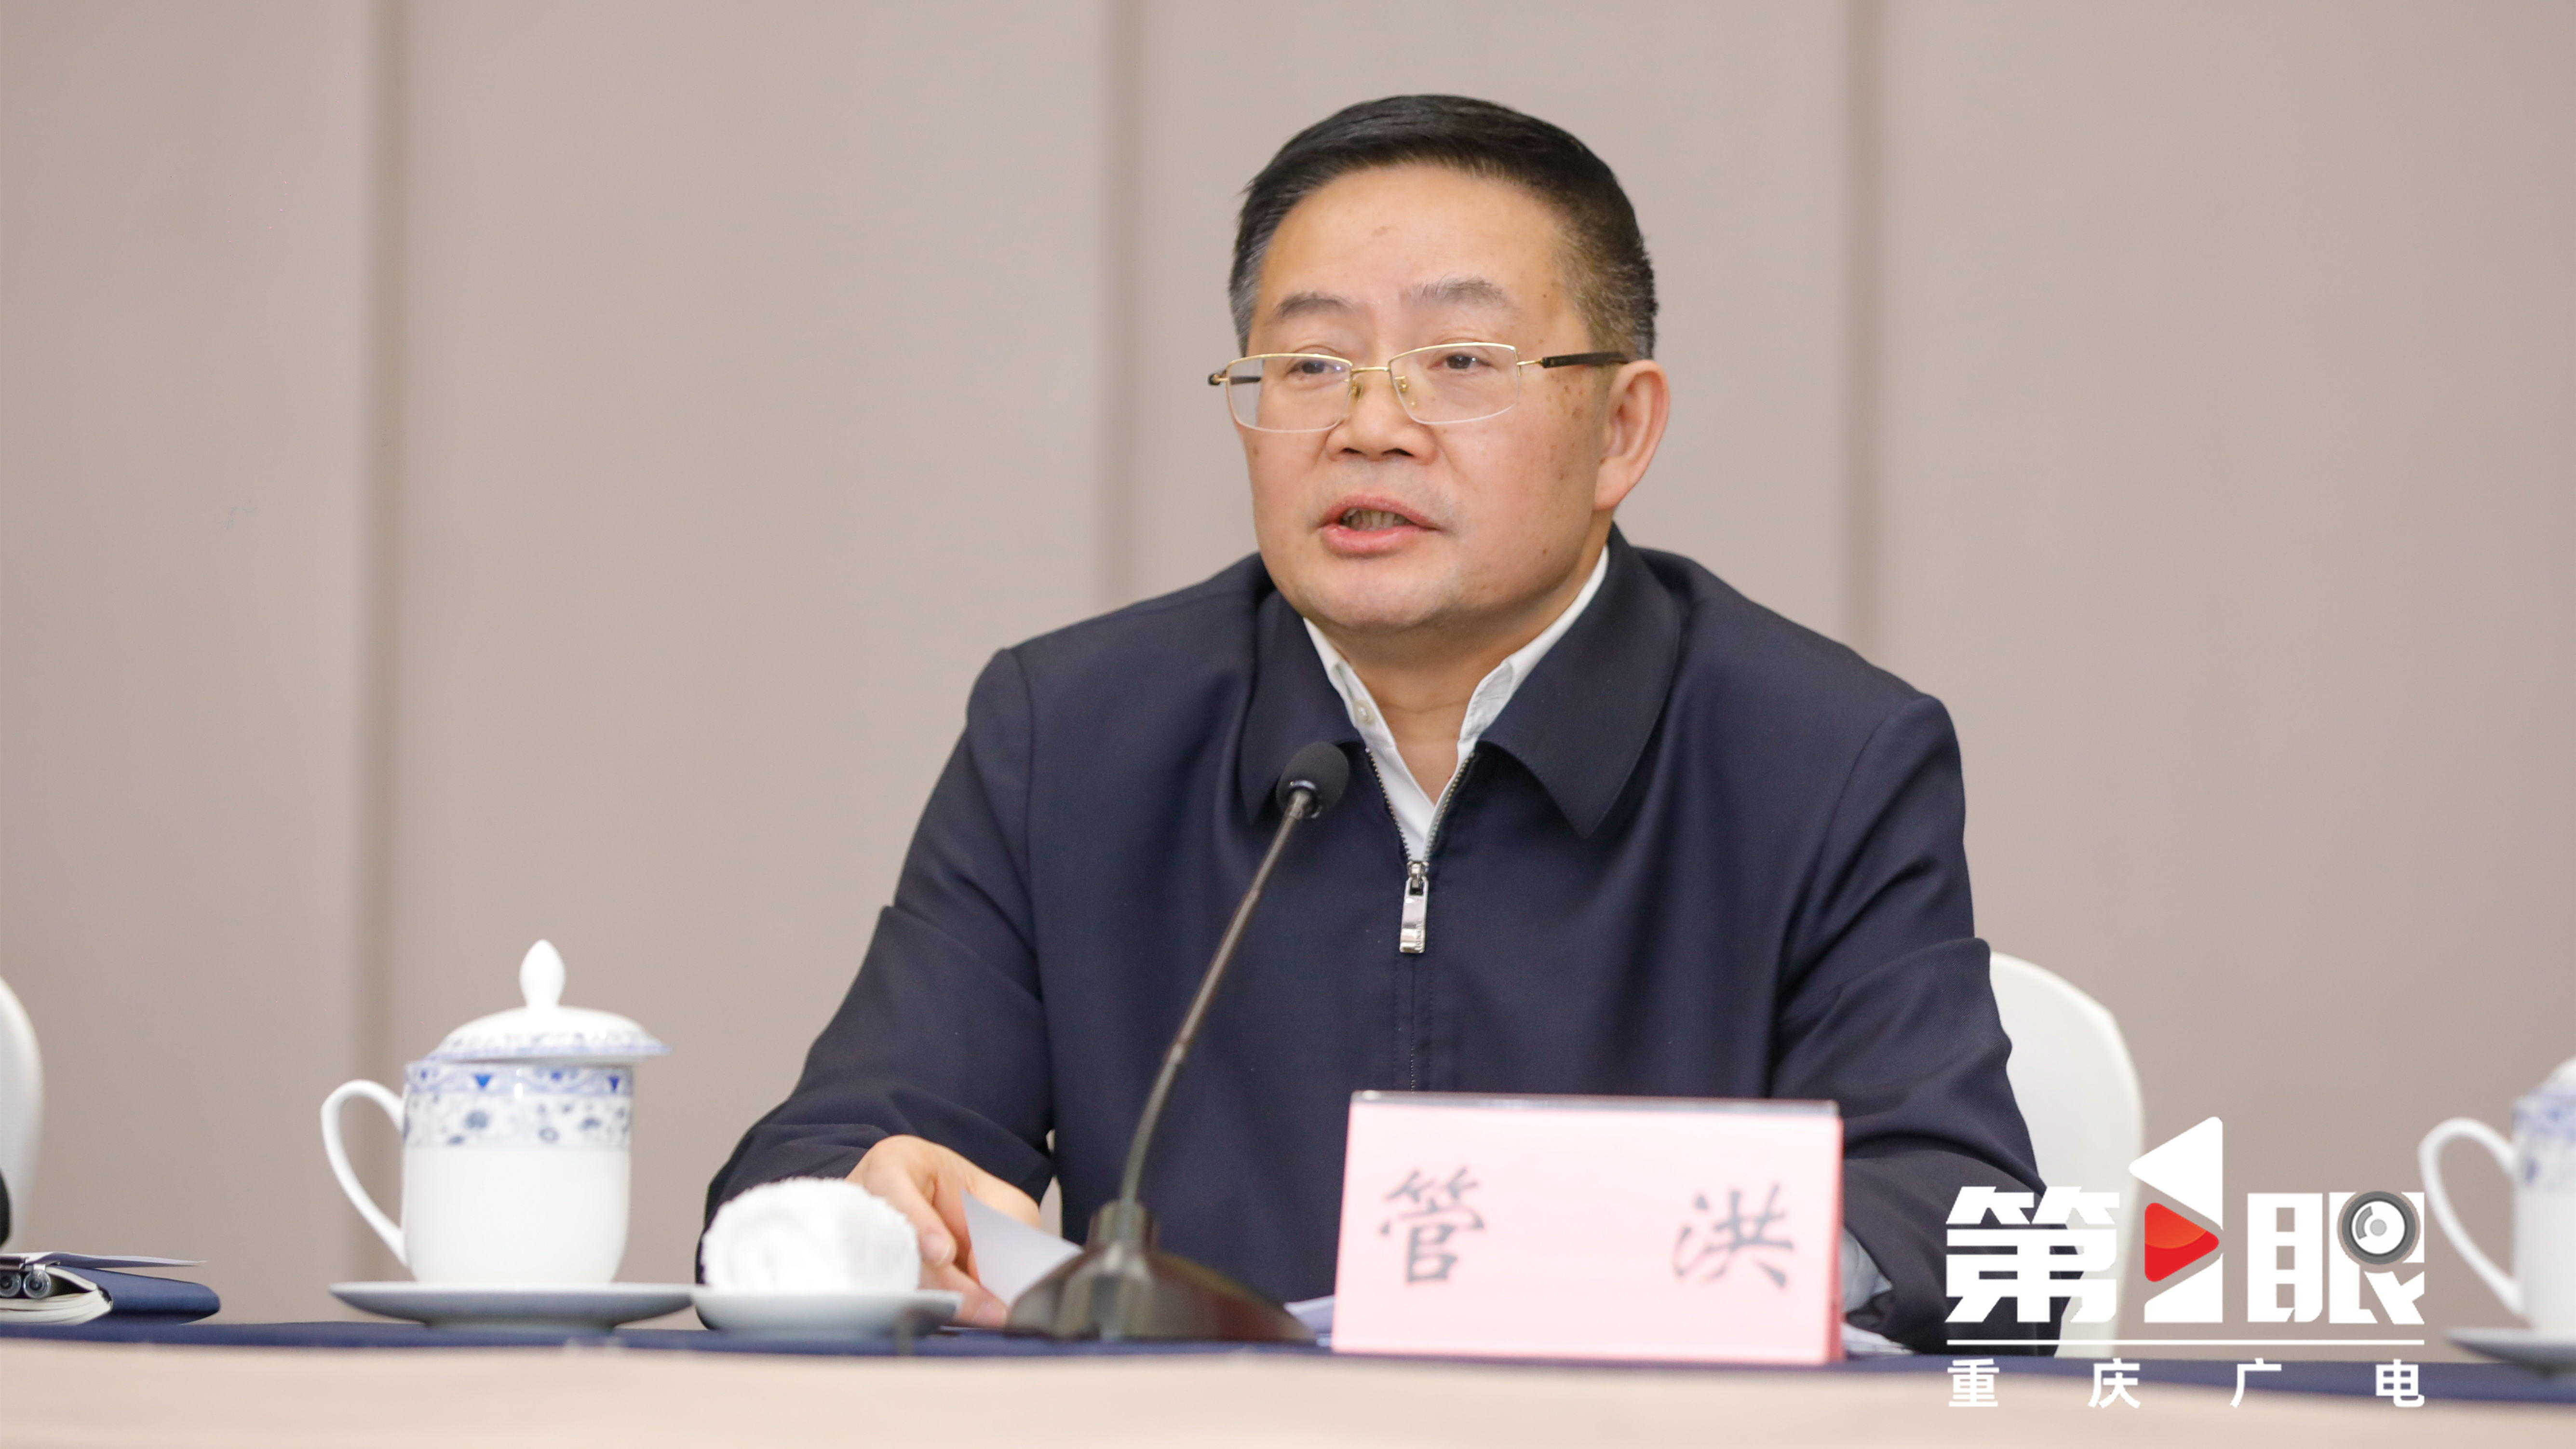 重庆市新闻工作者协会进行届中补选 管洪当选主席1